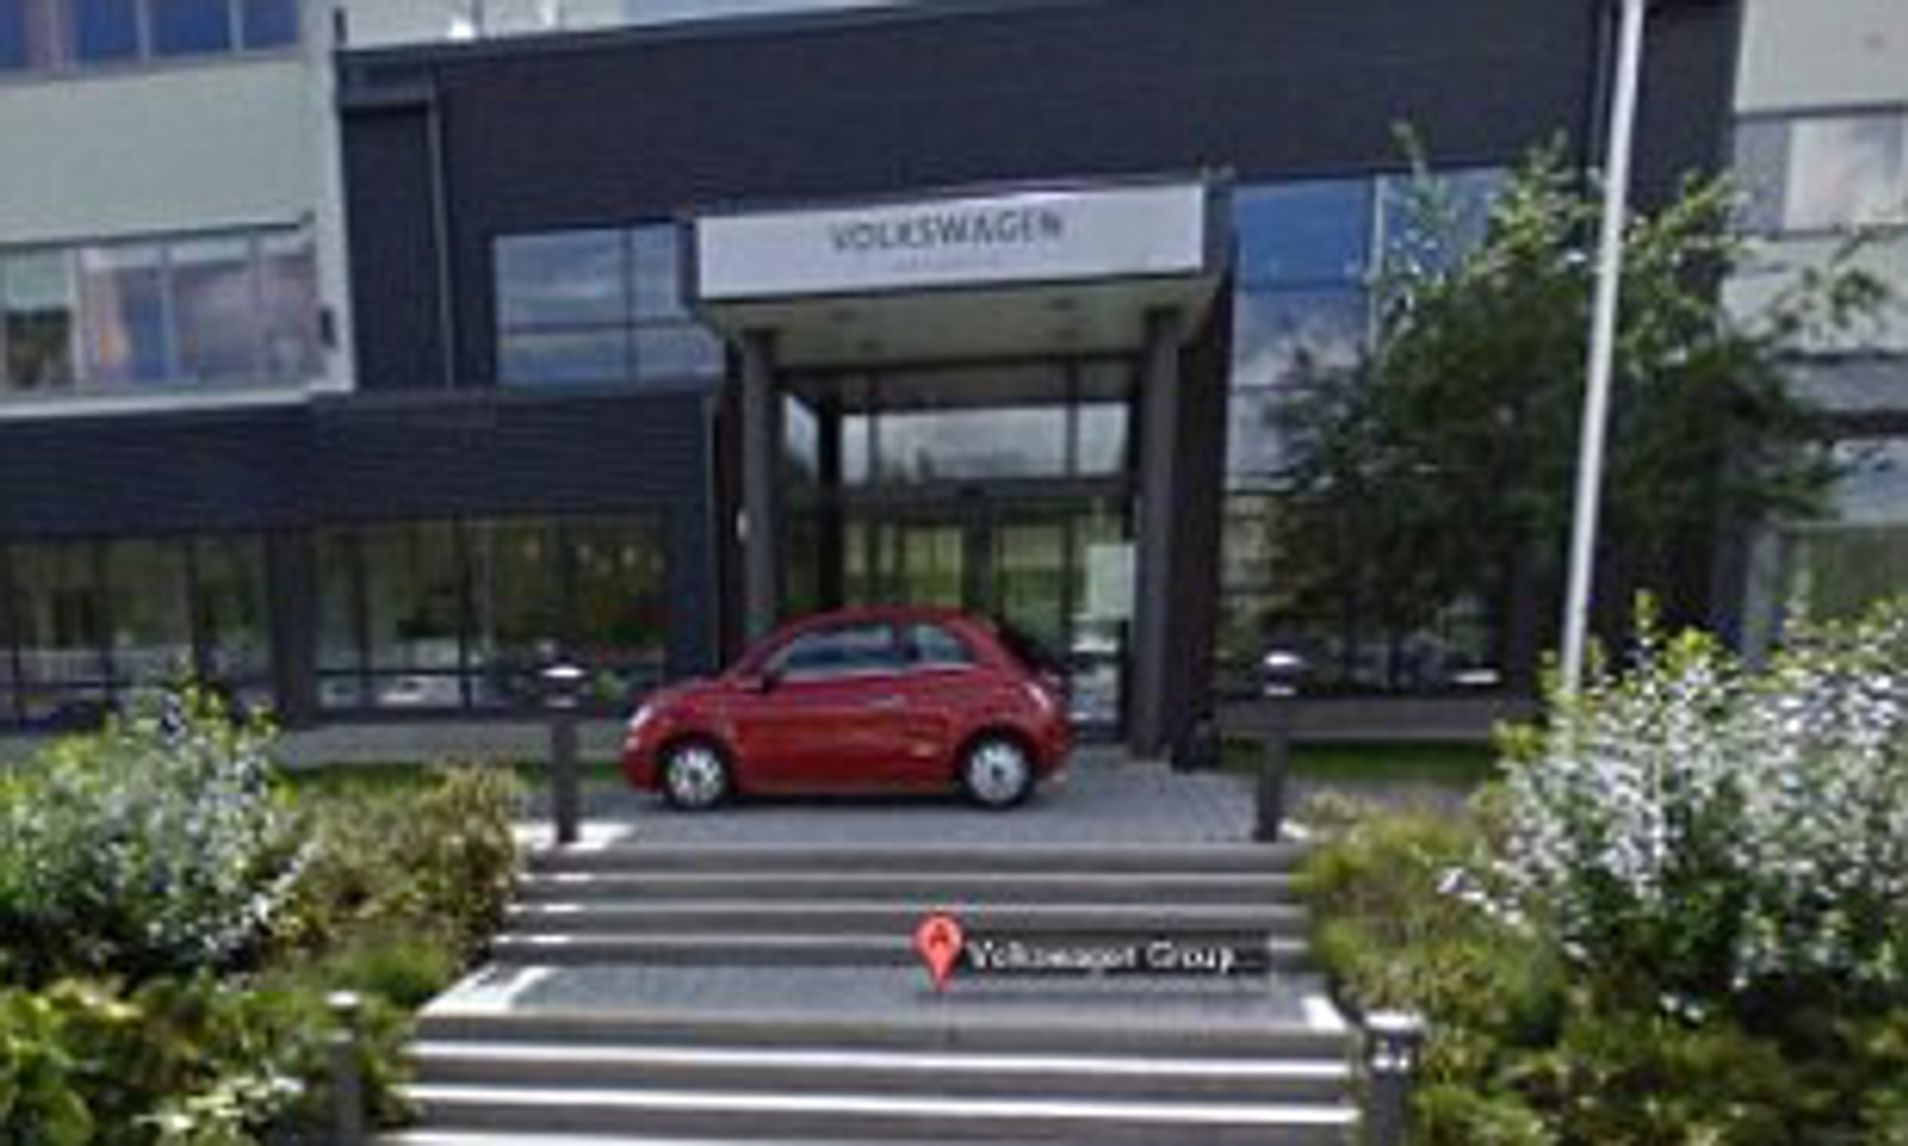 Fiat red 500 hatchback car in Google Maps result